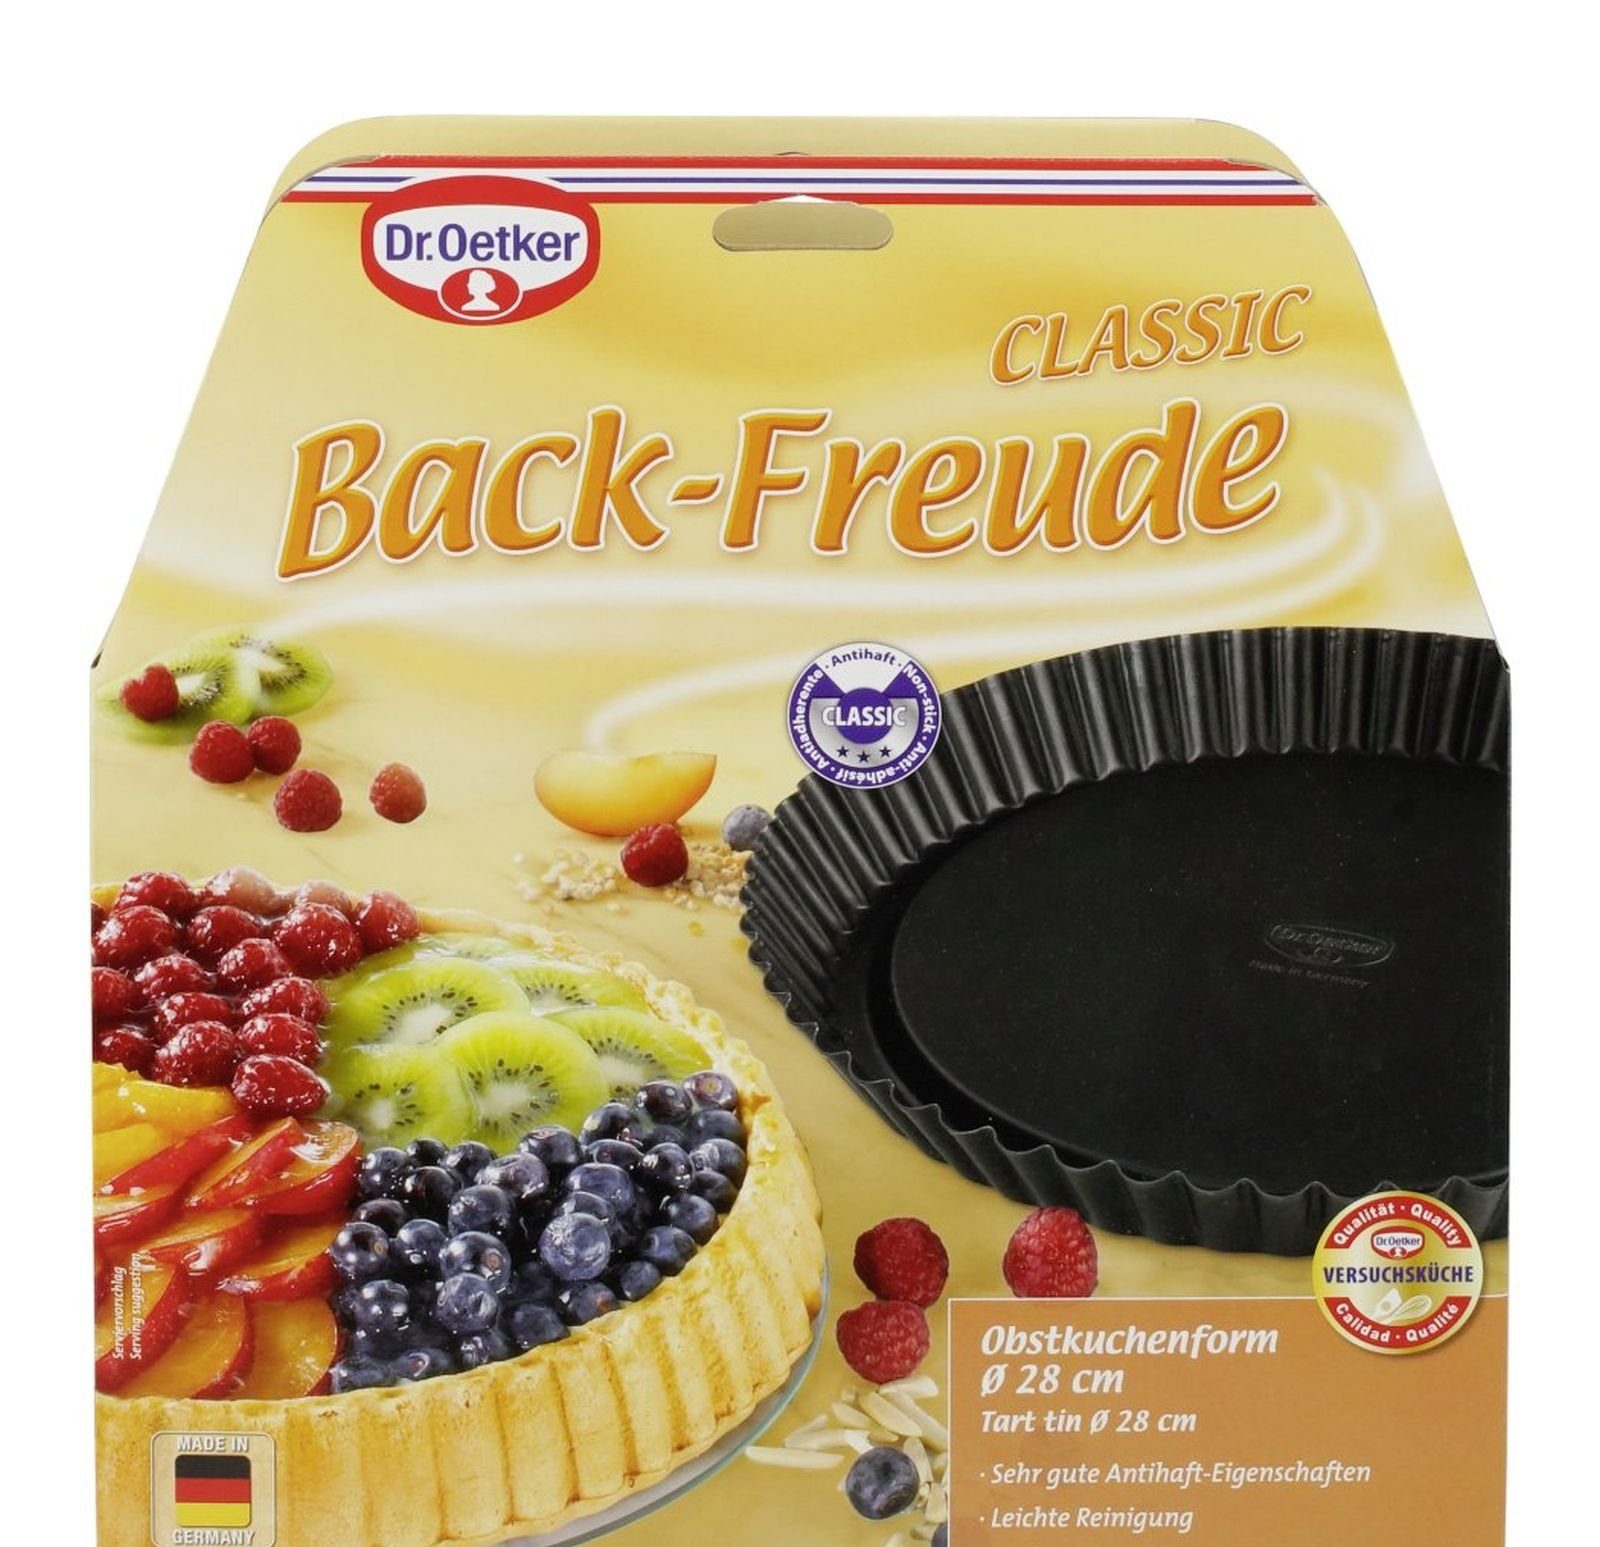 Back-Freude 28cm Kuchen- Obstkuchenform Obstform Classic Dr. - Oetker - Dr. Oetker Ø Obst- Gravidus